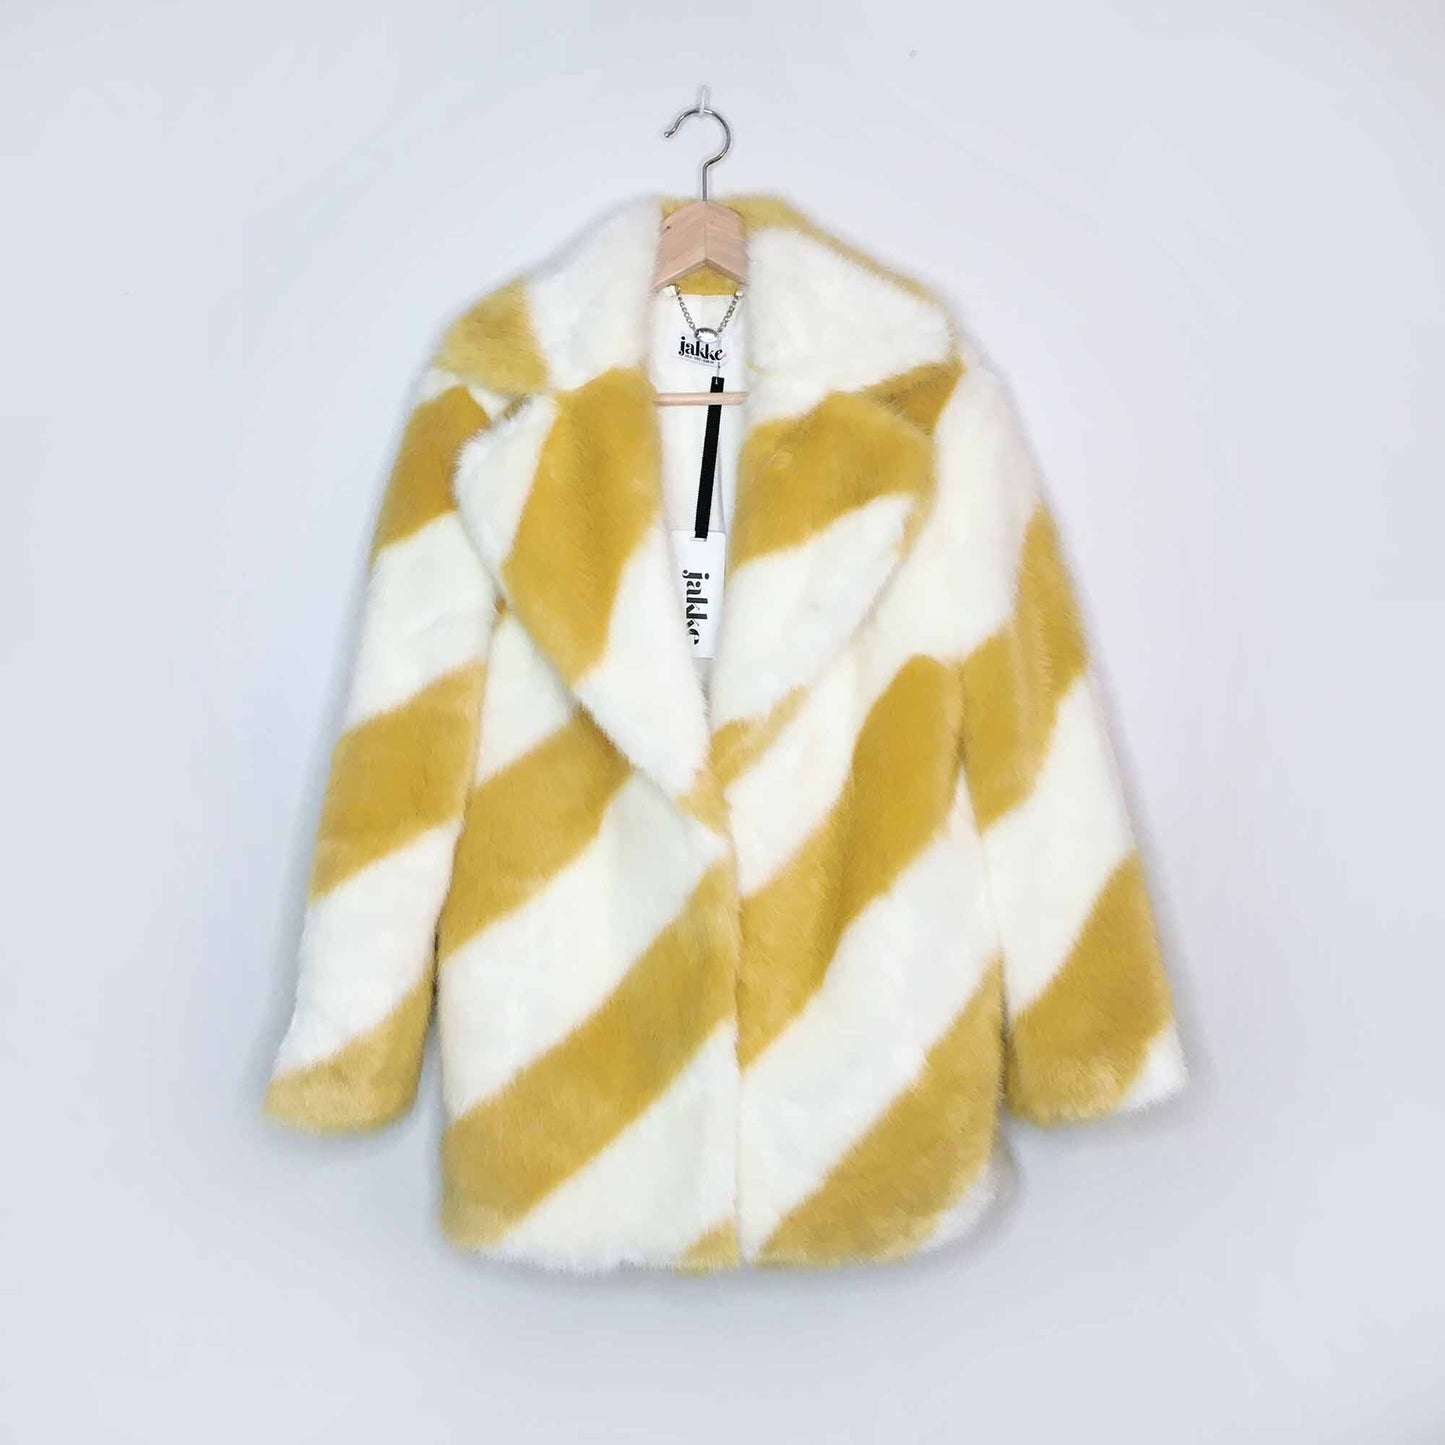 NWT Jakke faux fur candy stripe jacket - size 2